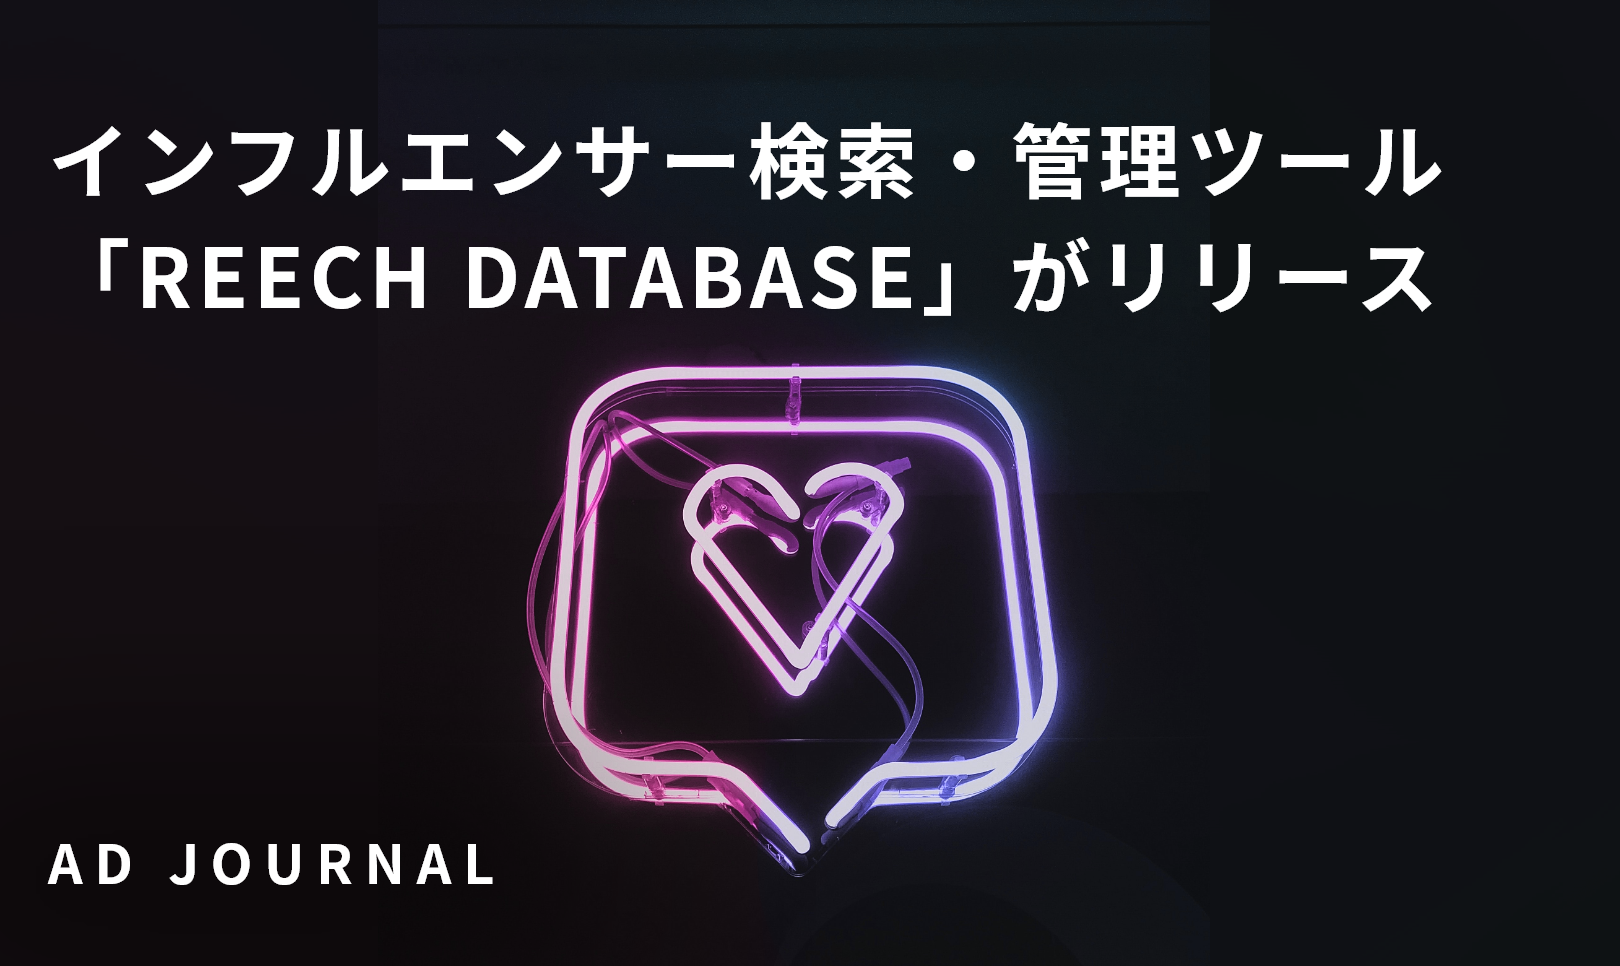 インフルエンサー検索・管理ツール「REECH DATABASE」がリリース